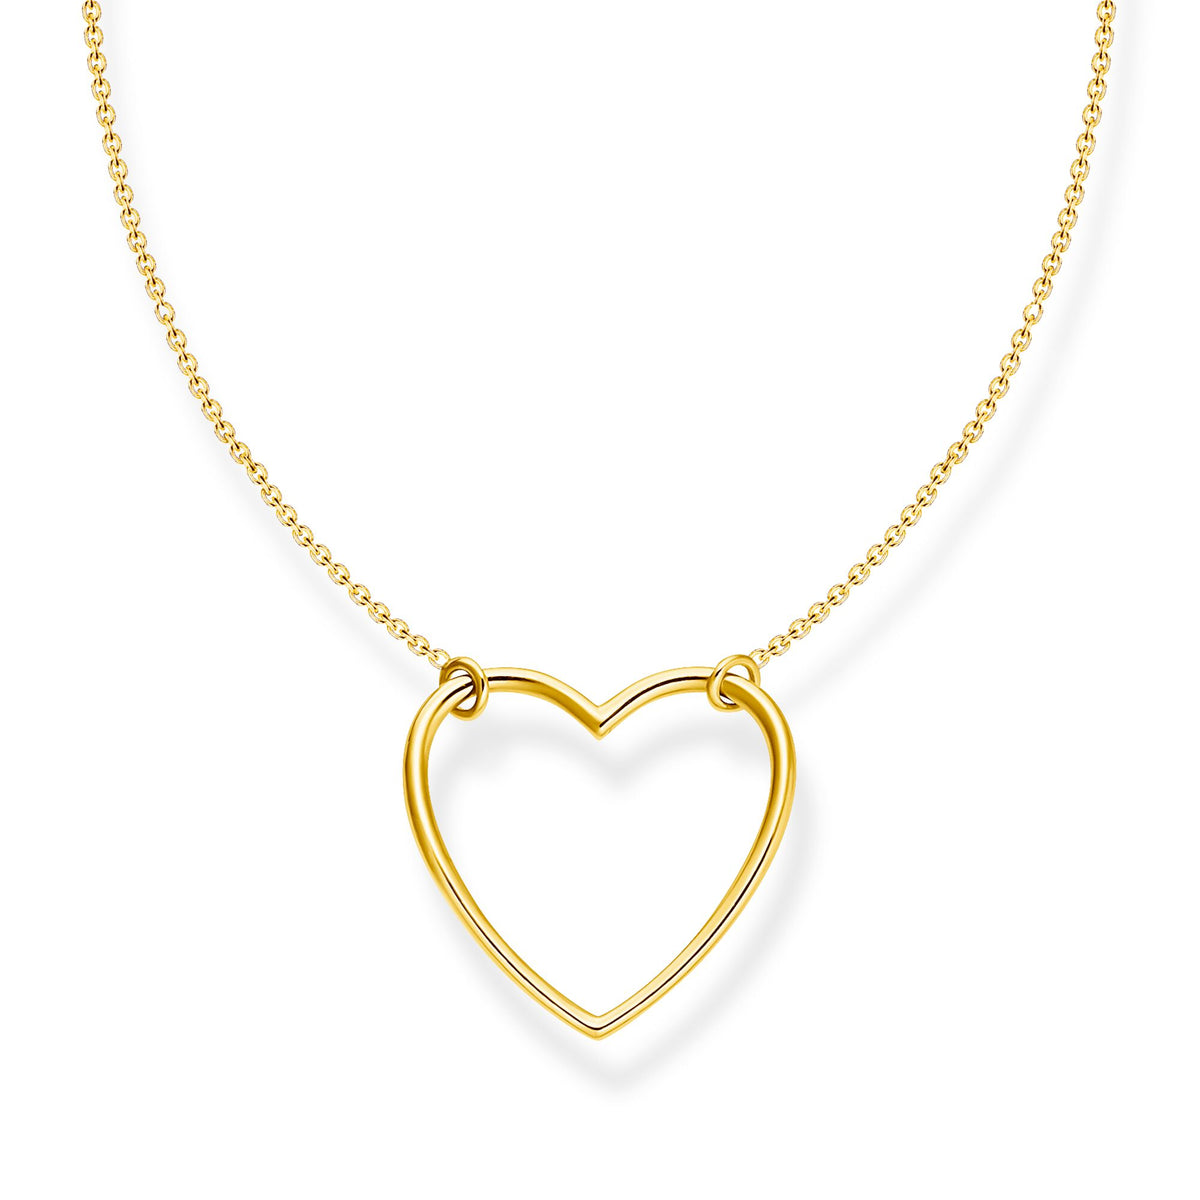 Thomas Sabo Necklace Heart Gold Necklace Thomas Sabo 